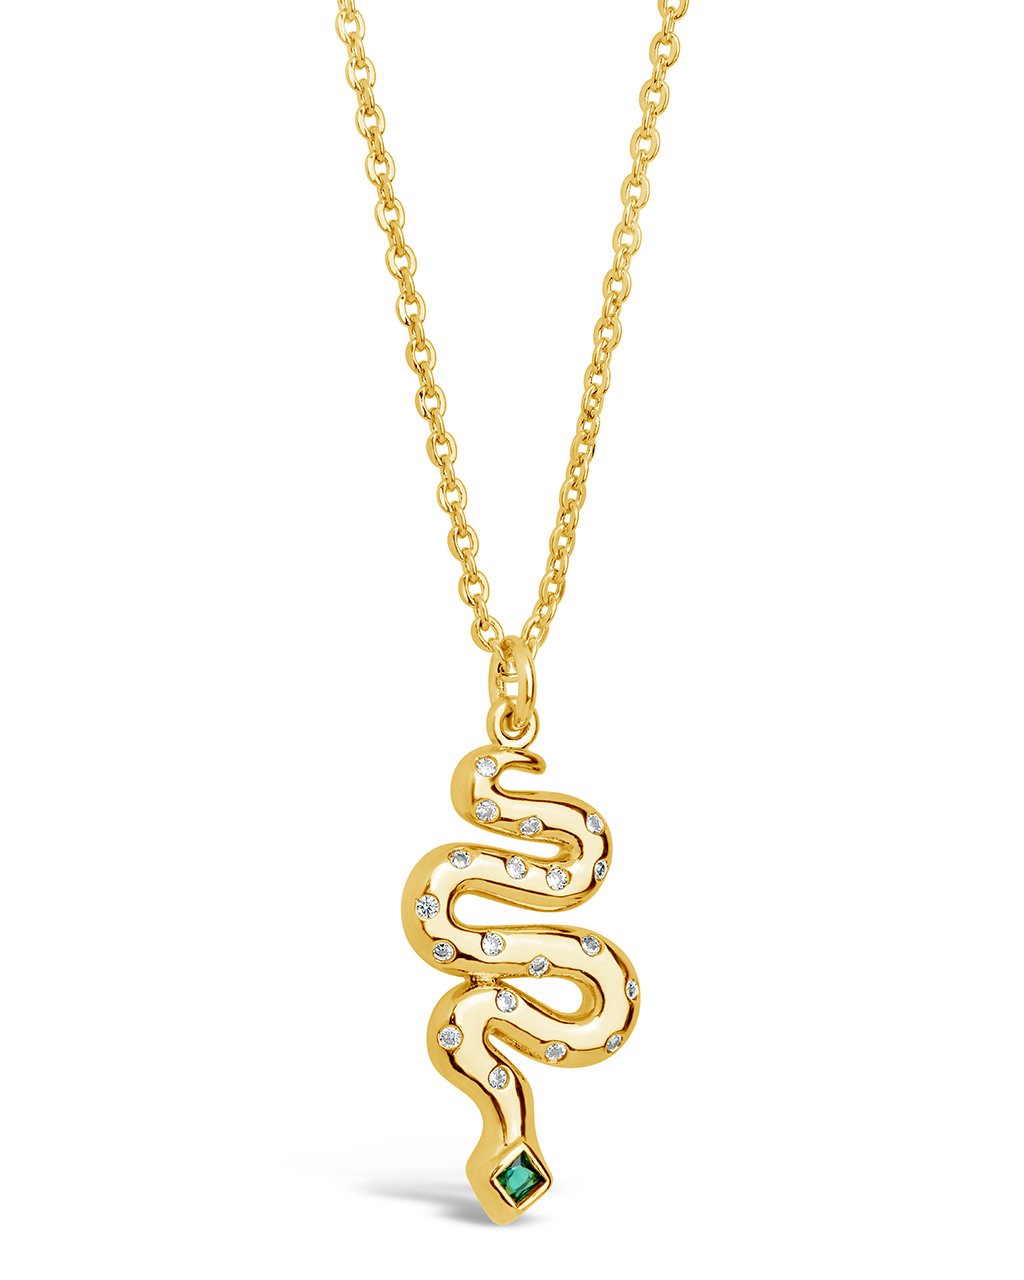 Eden Pendant Necklace Necklace Sterling Forever Gold 